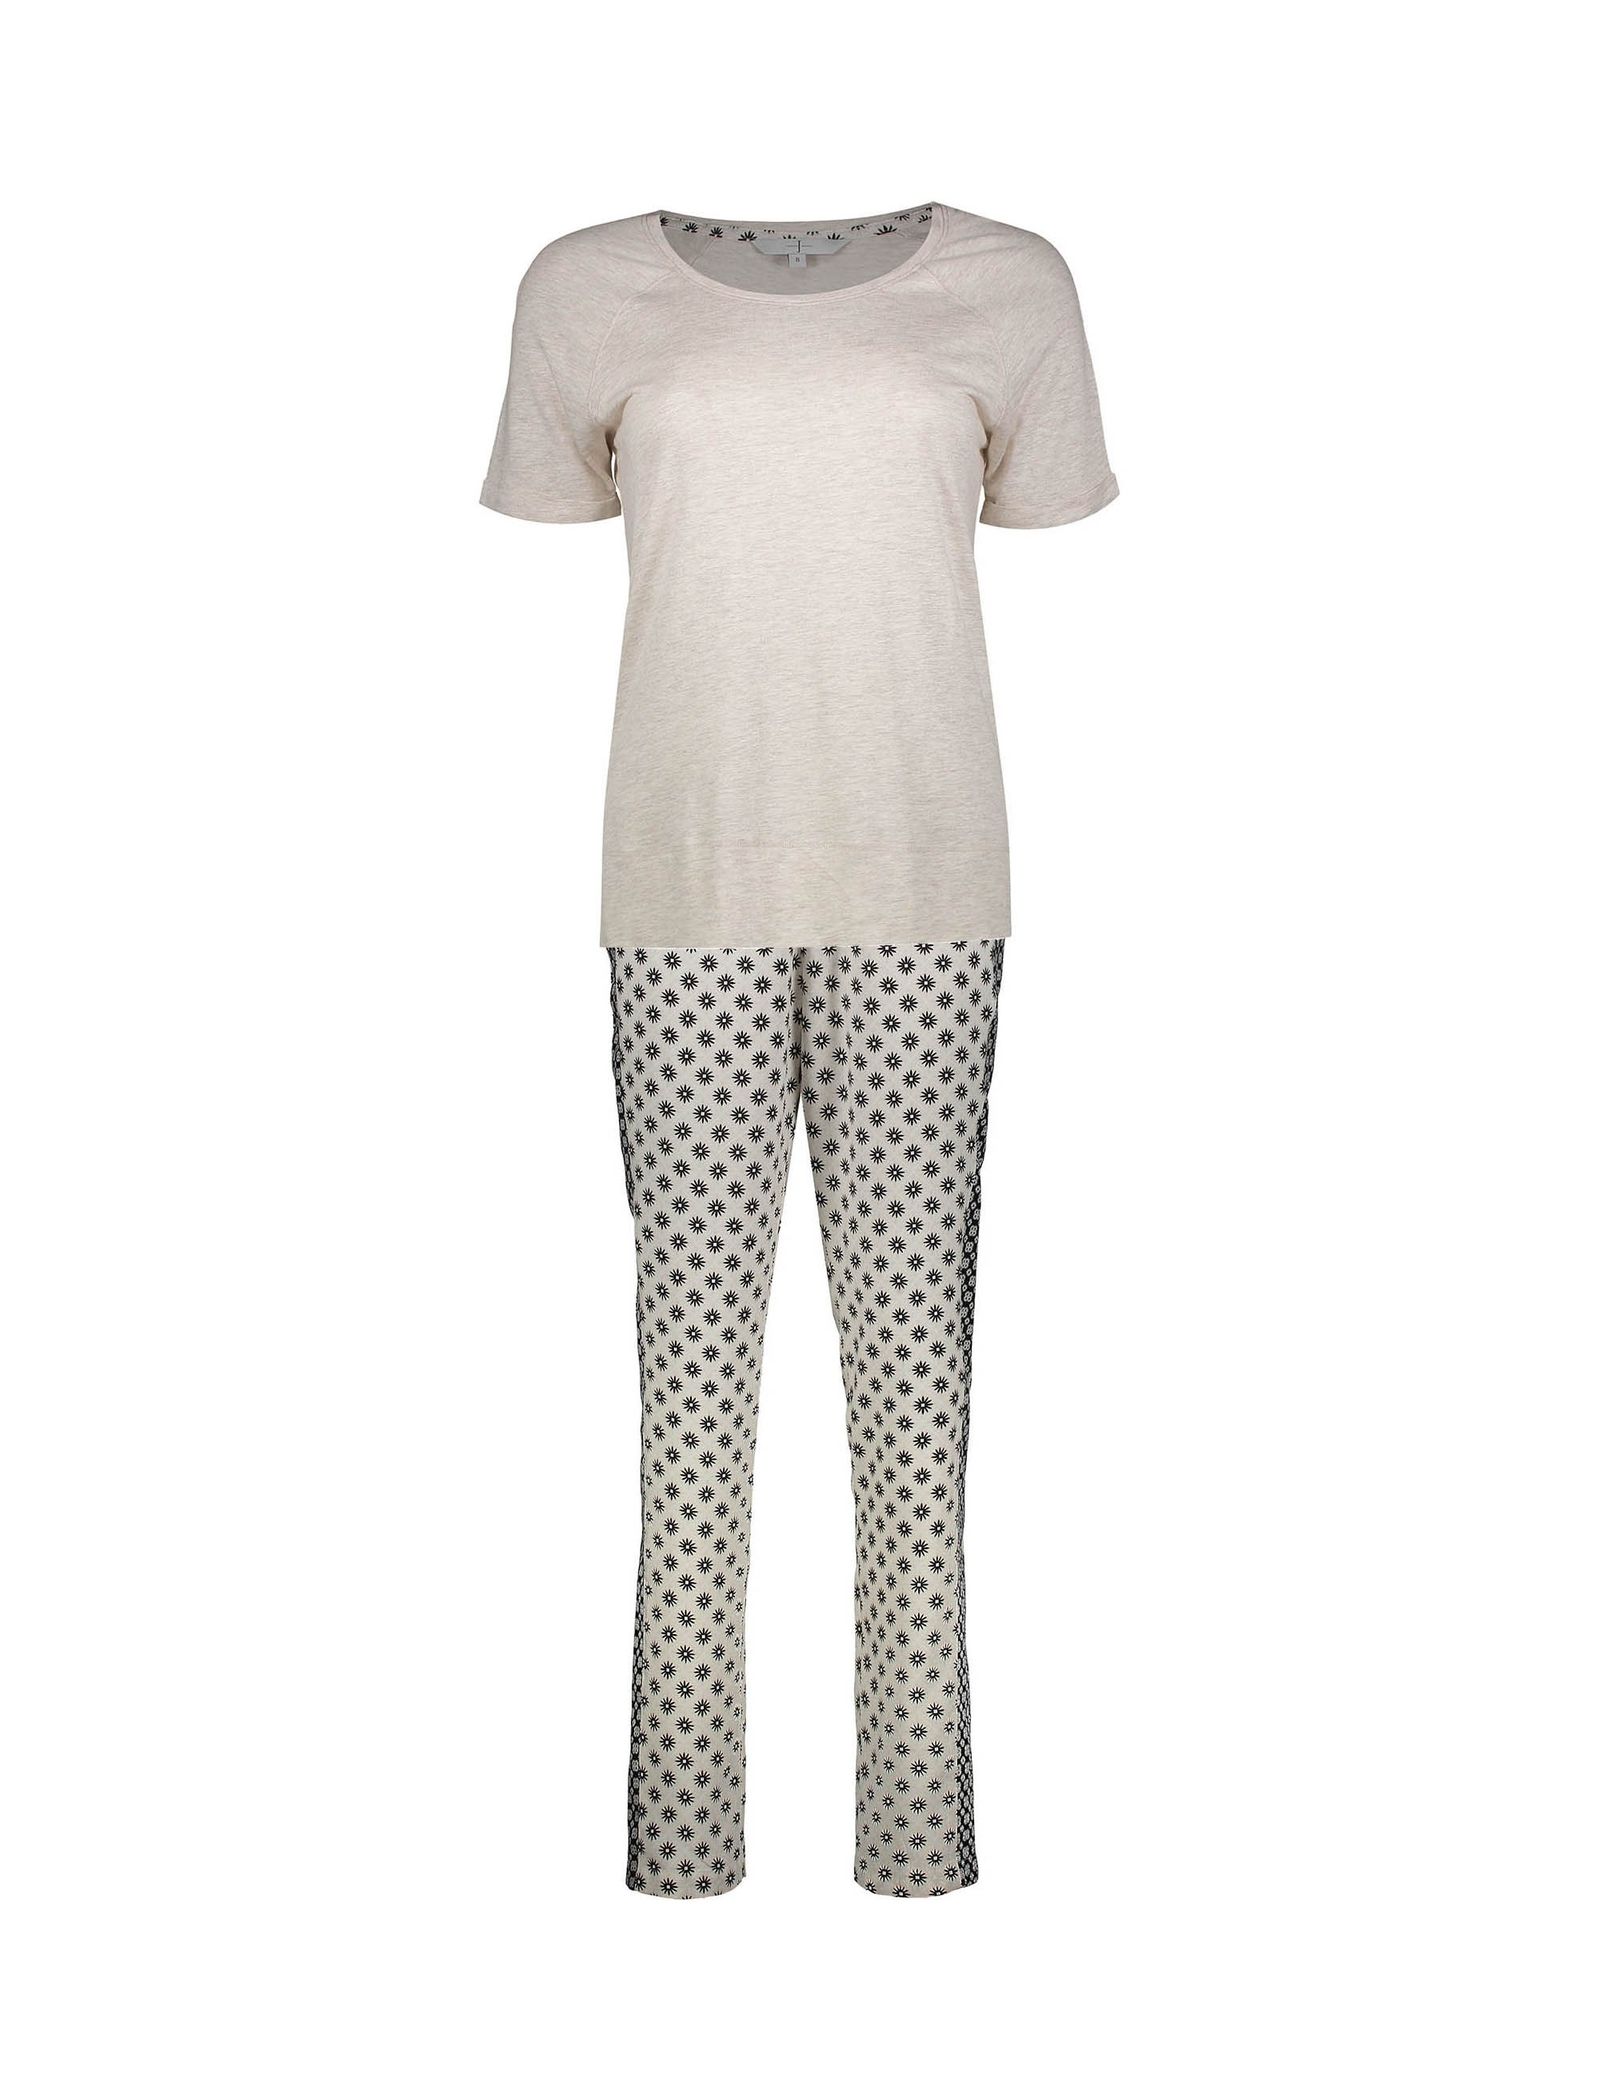 تی شرت و شلوار ویسکوز راحتی زنانه - جی بای جسپرکنران - سفيد - 2